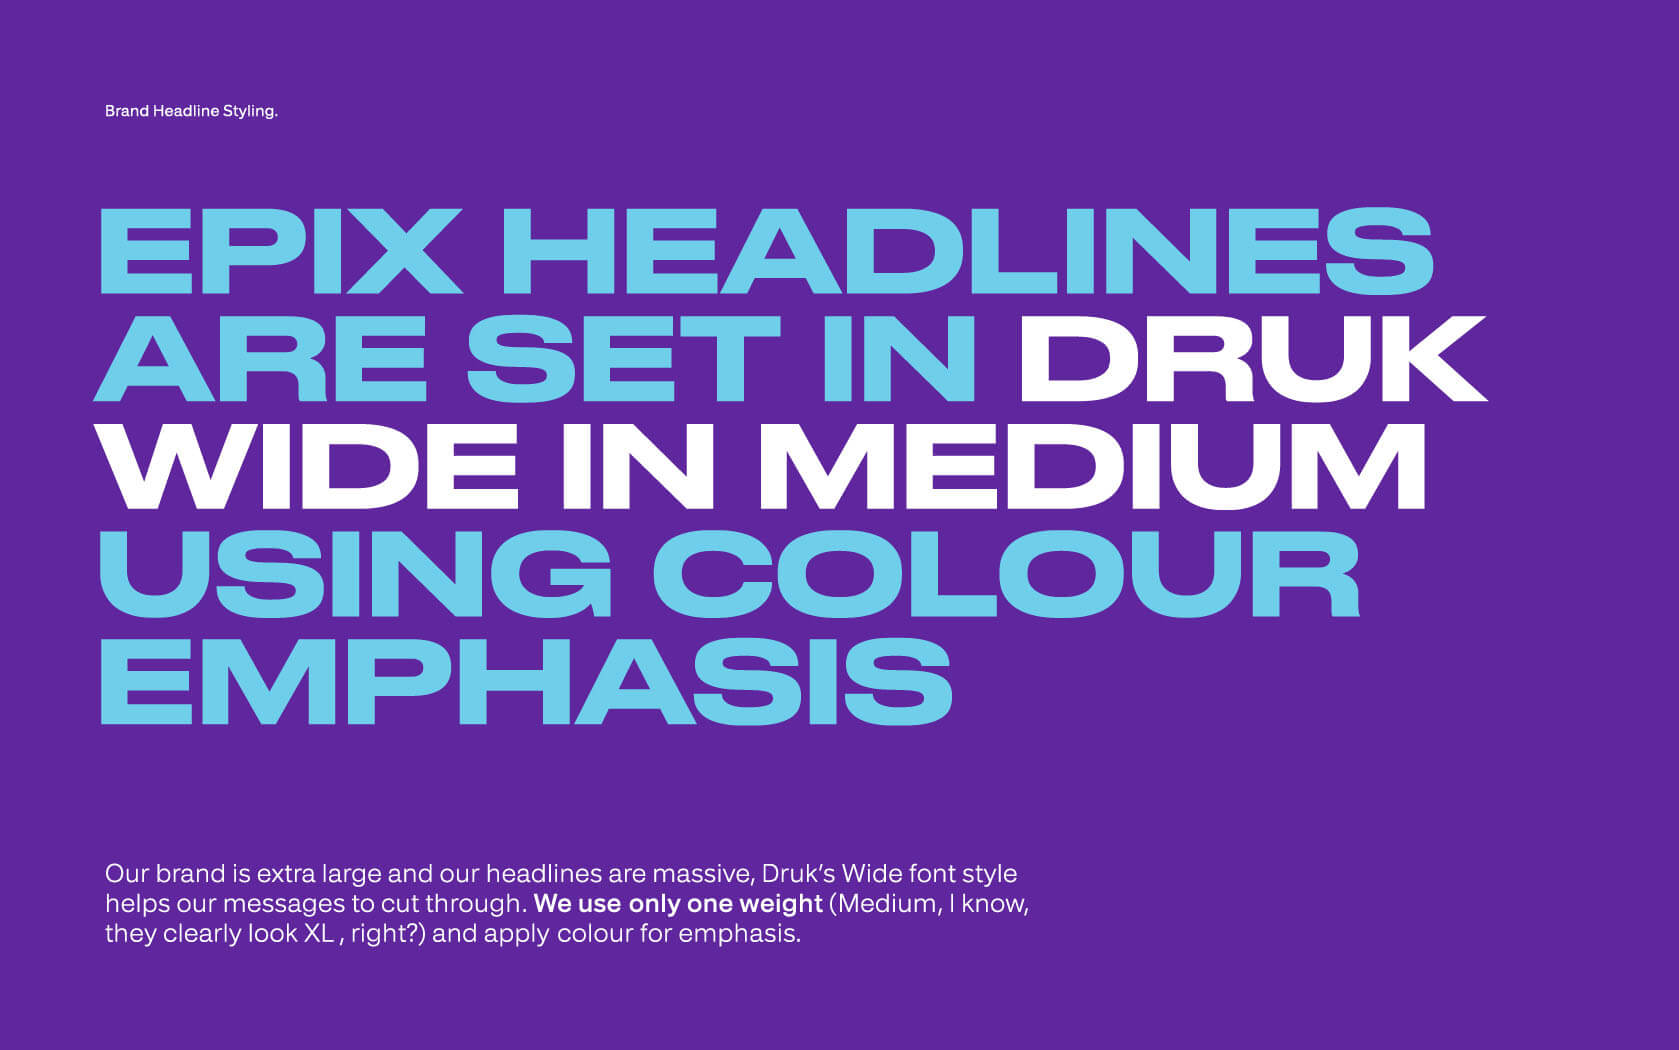 Epix. Headline Style